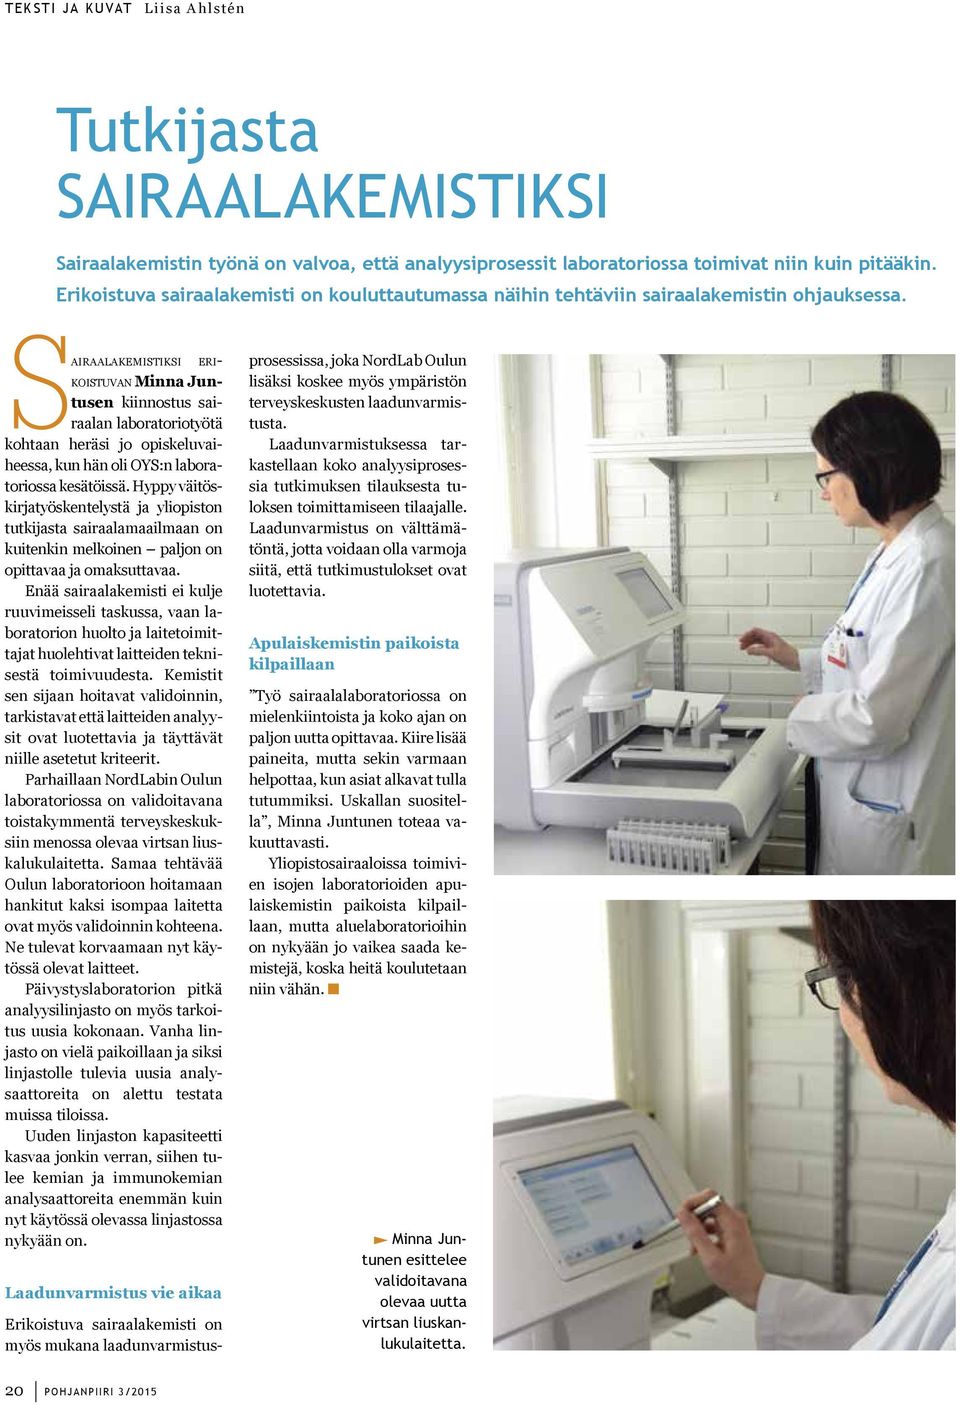 Sairaalakemistiksi erikoistuvan Minna Juntusen kiinnostus sairaalan laboratoriotyötä kohtaan heräsi jo opiskeluvaiheessa, kun hän oli OYS:n laboratoriossa kesätöissä.